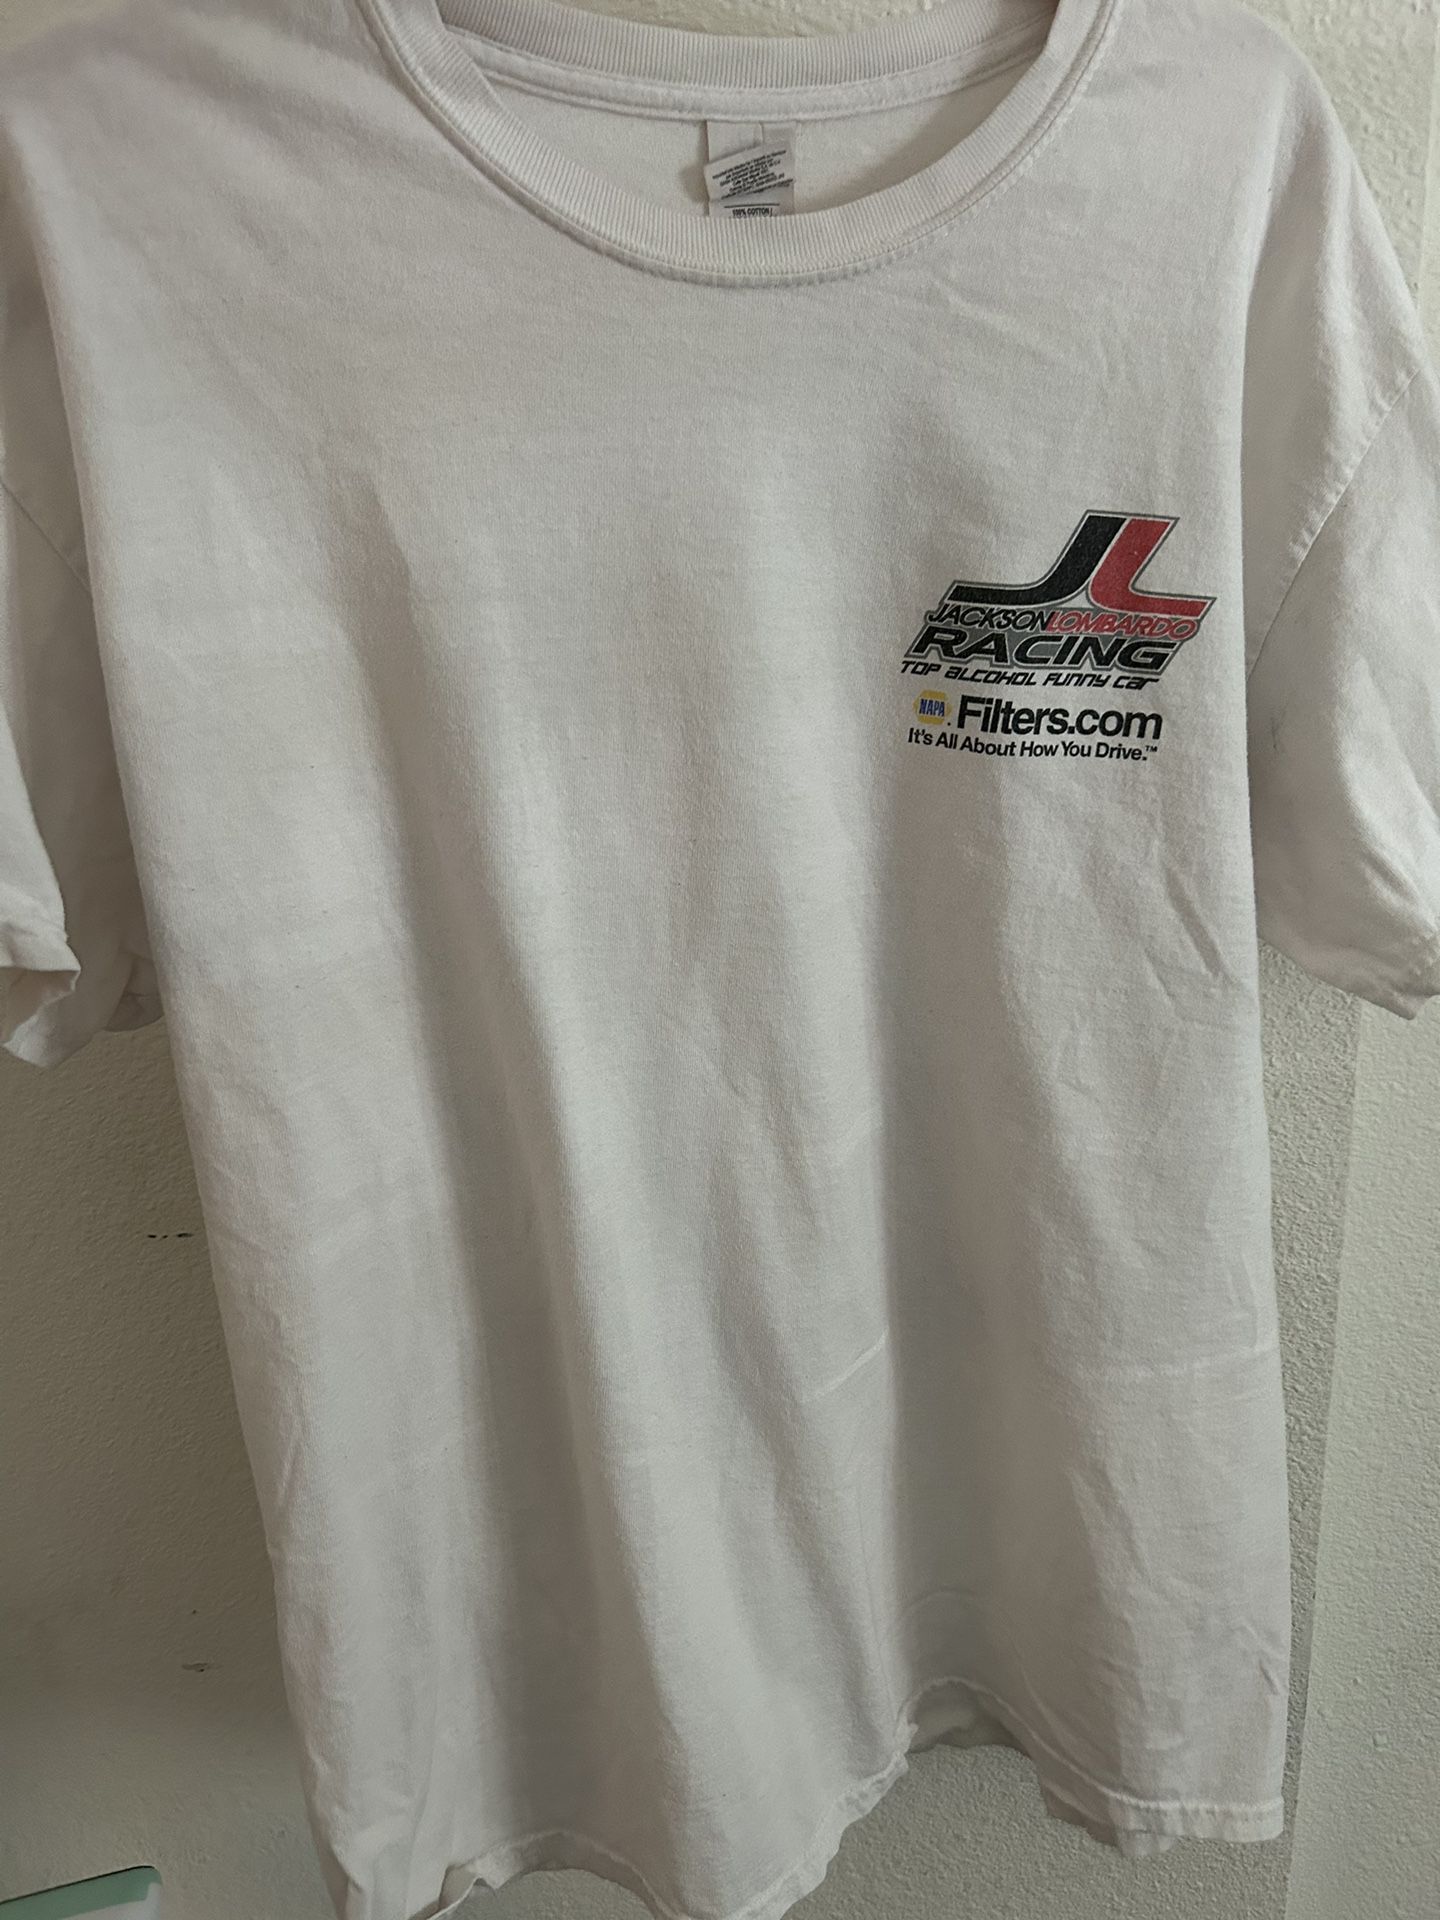 Vintage Racing Car Shirt